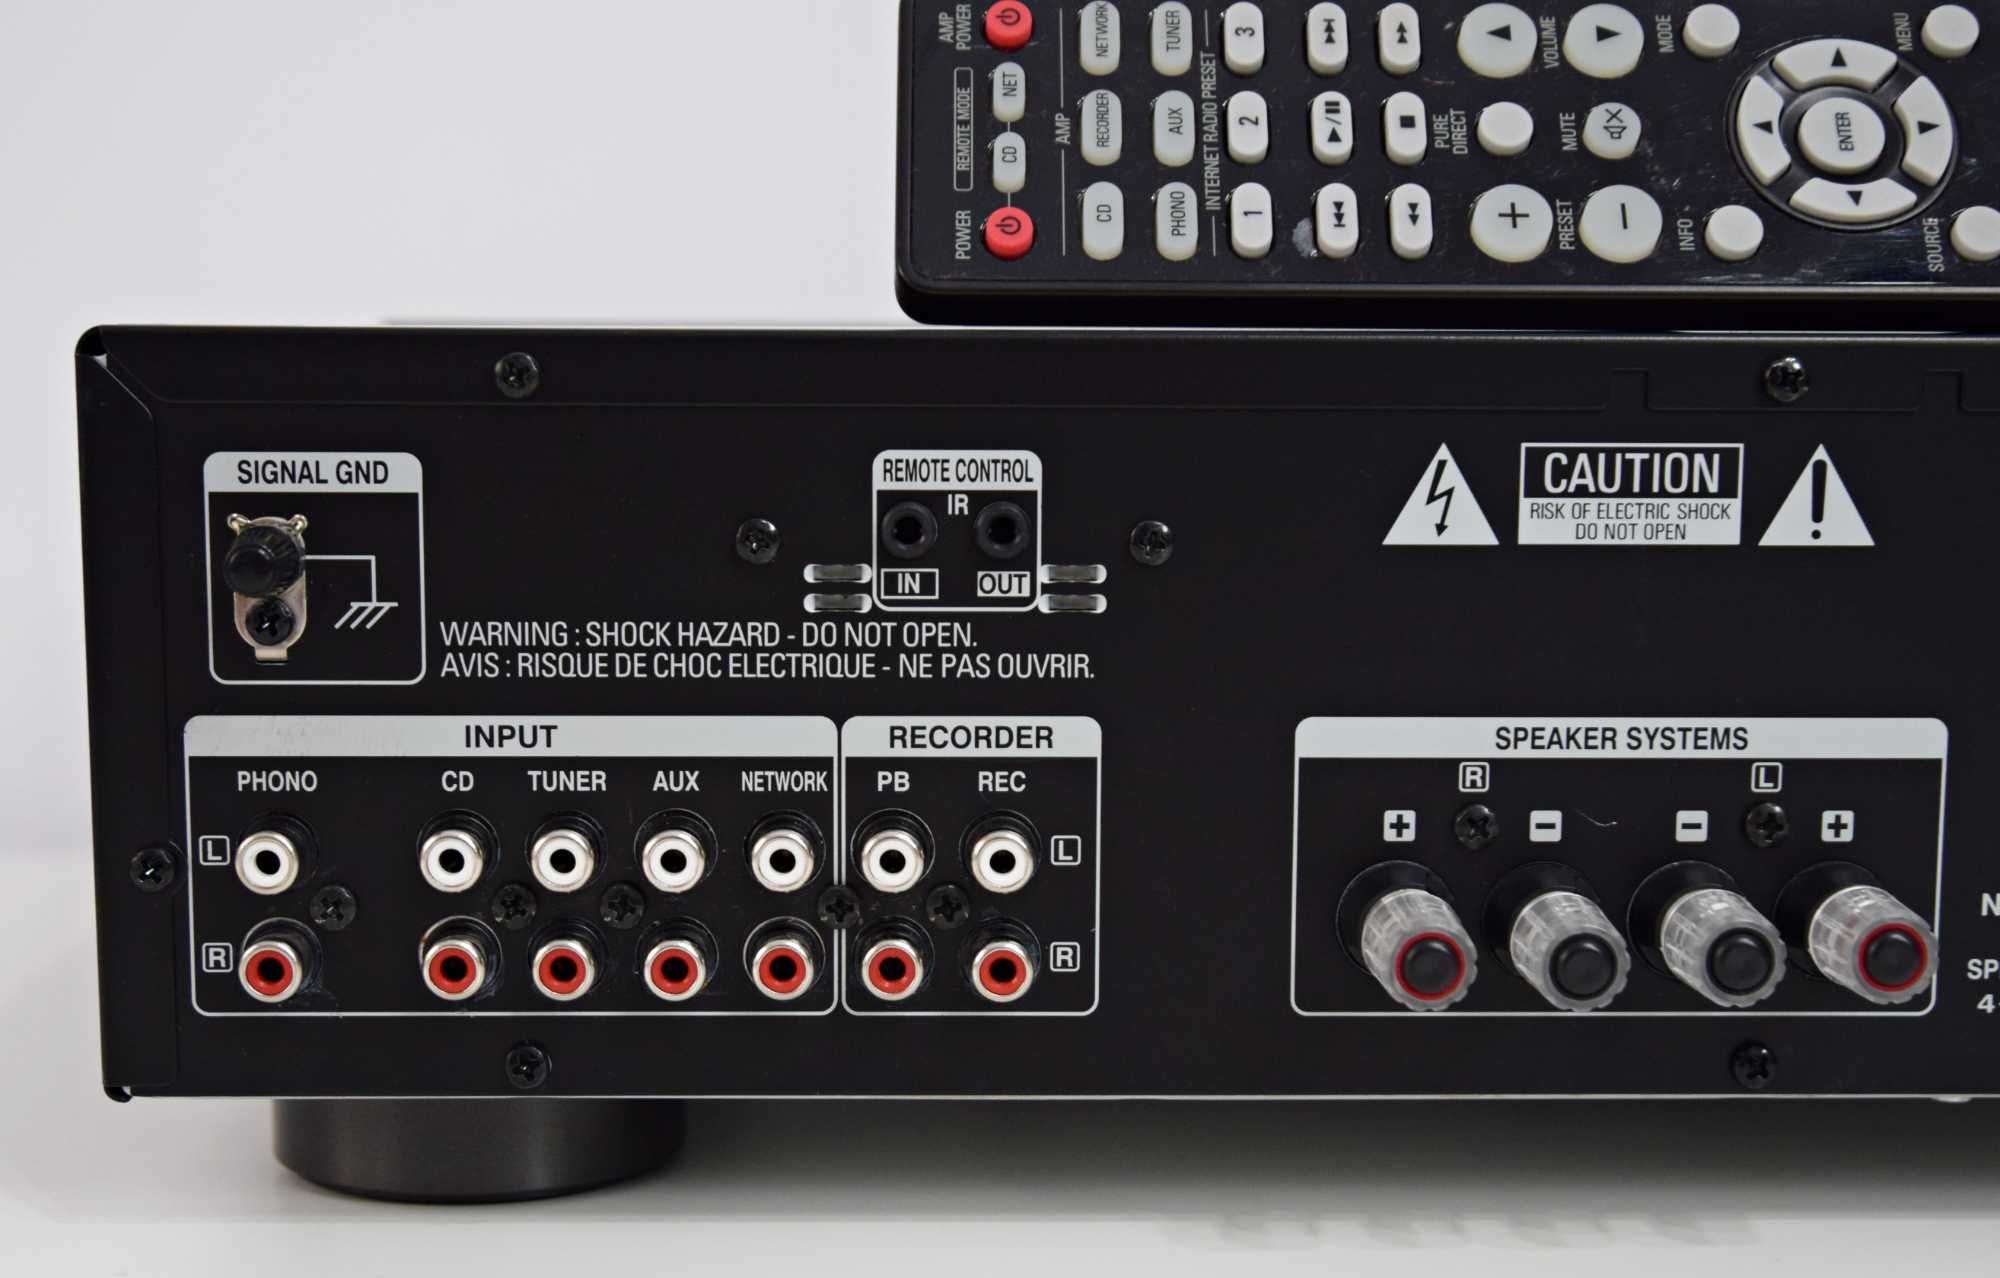 Amplificator Denon PMA-520AE